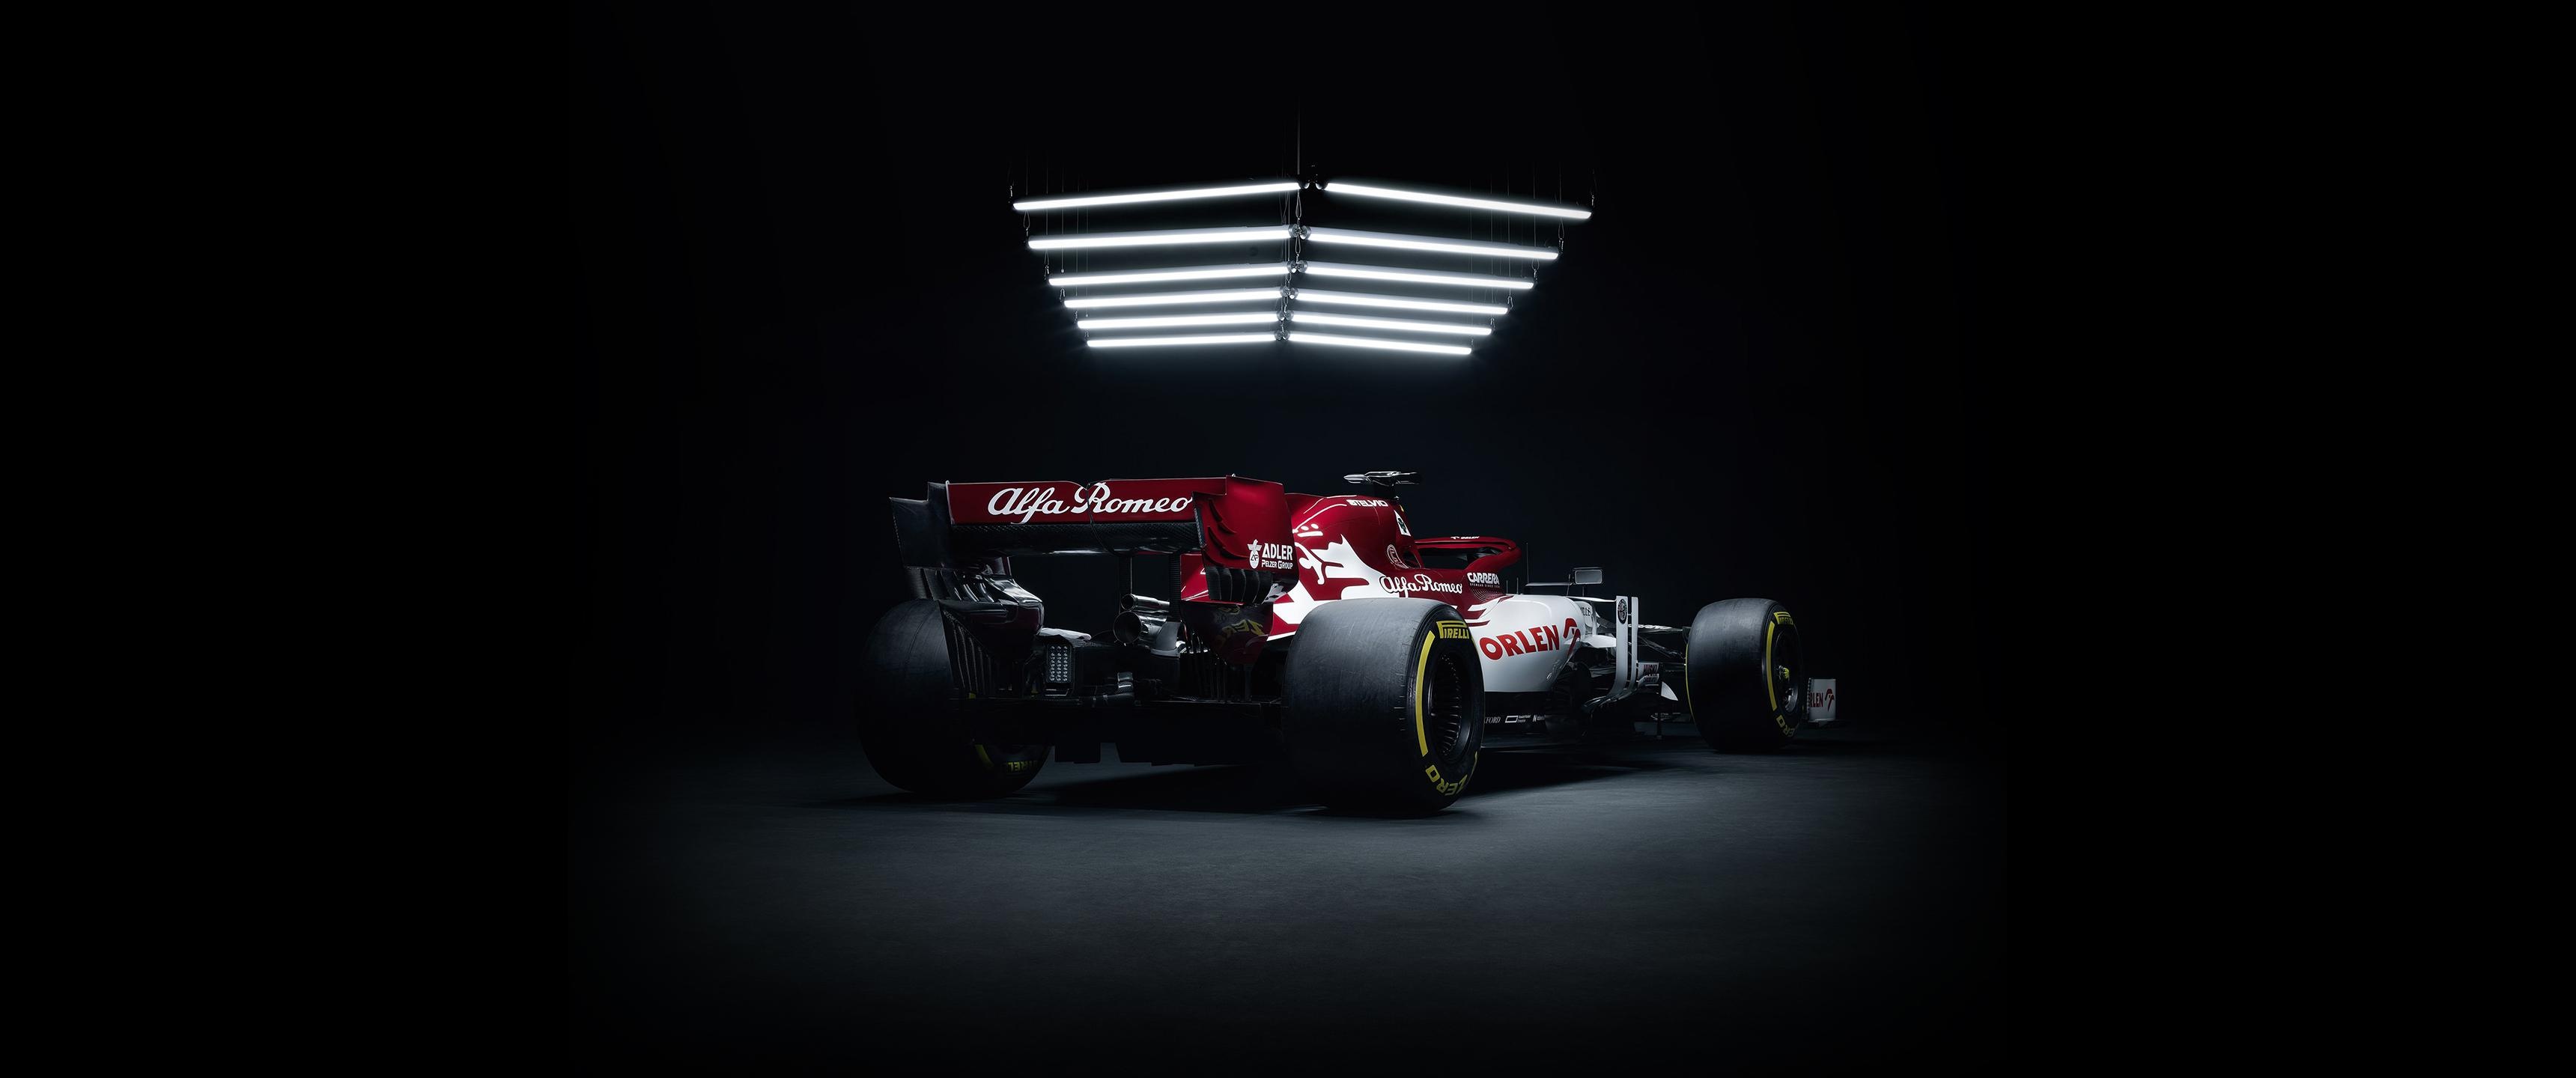 Formula 1: Alfa Romeo C39, driven by Kimi Raikkonen and Antonio Giovinazzi, 2020. 3440x1440 Dual Screen Wallpaper.